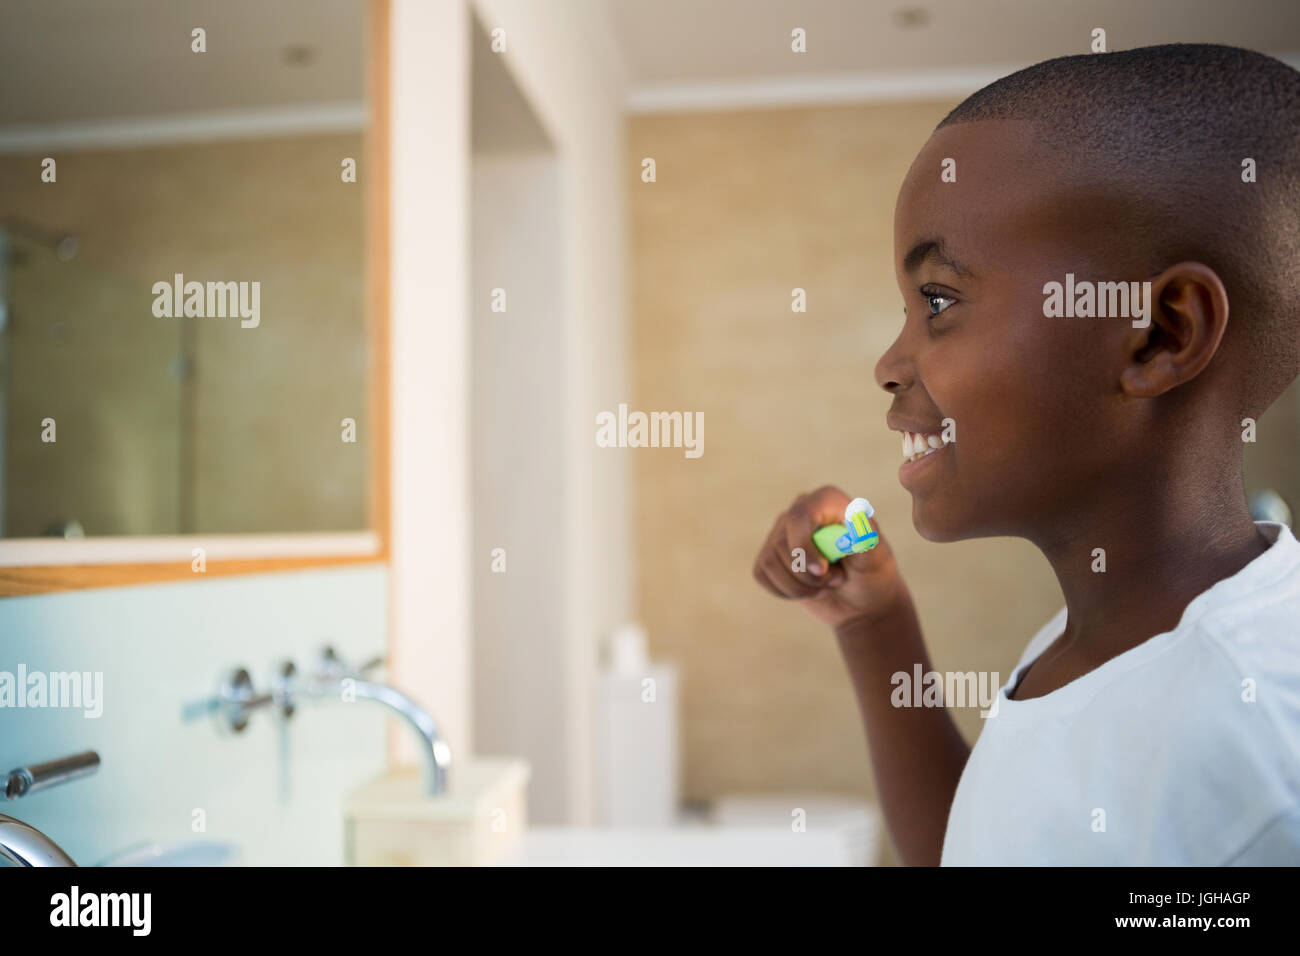 Vue latérale du smiling boy avec une brosse à dents dans la salle de bains intérieure Banque D'Images